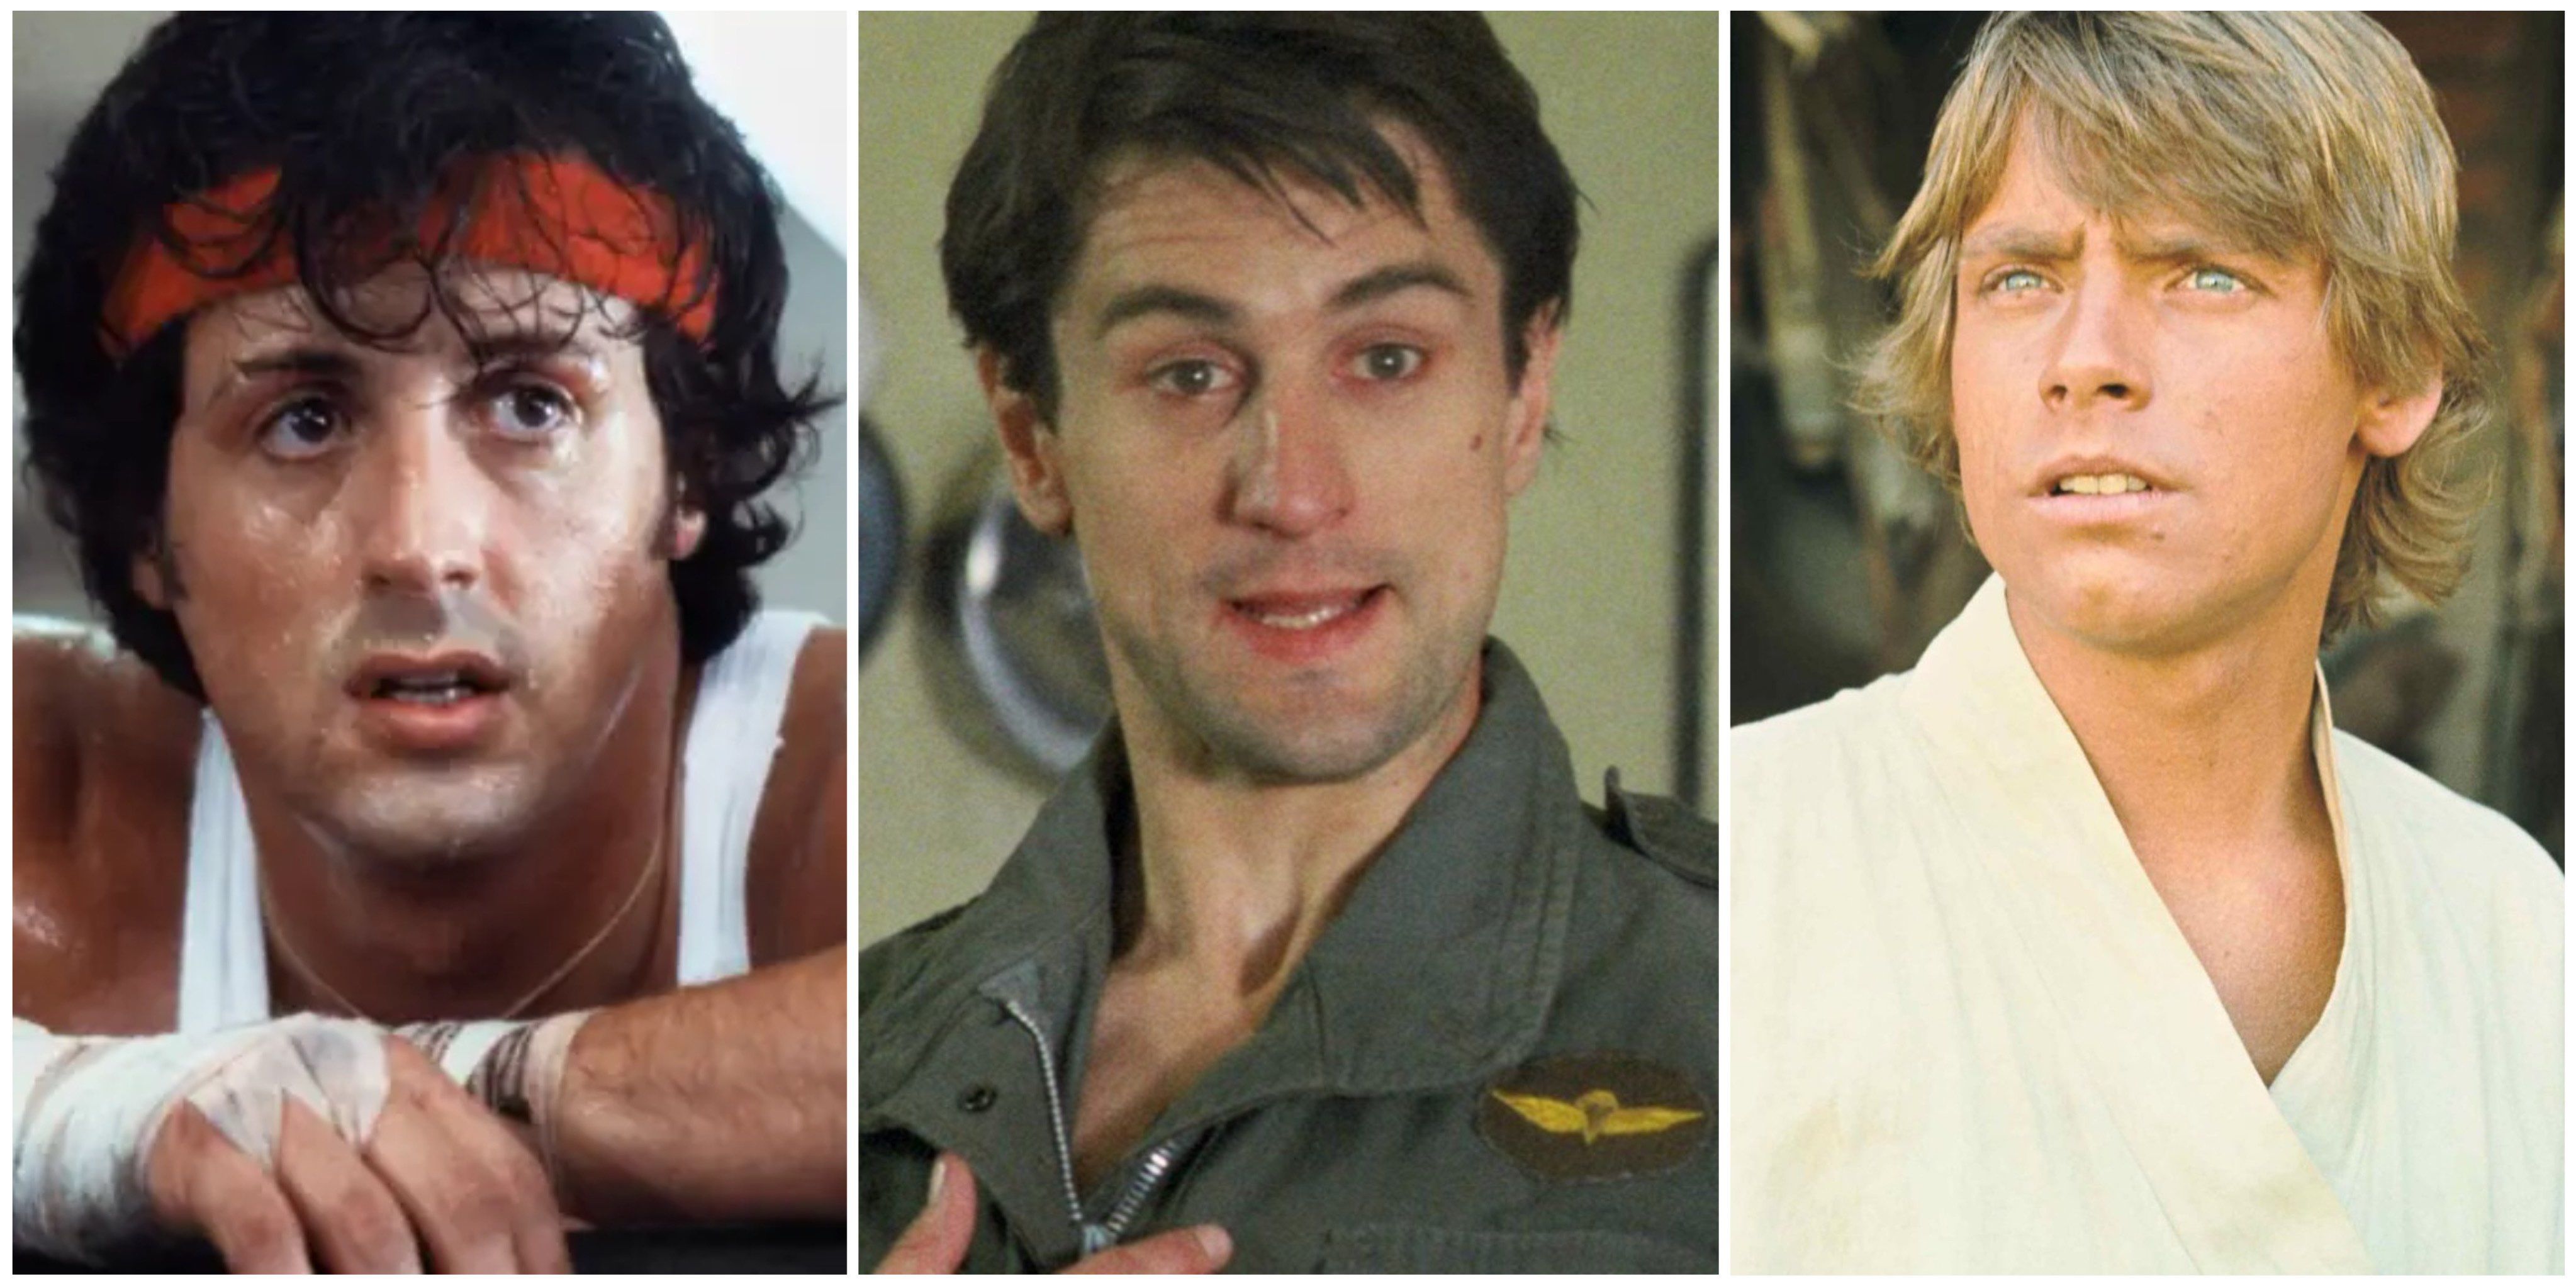 Sylvester Stallone as Rocky Balboa, Robert De Niro as Travis Bickle, and Mark Hamill as Luke Skywalker